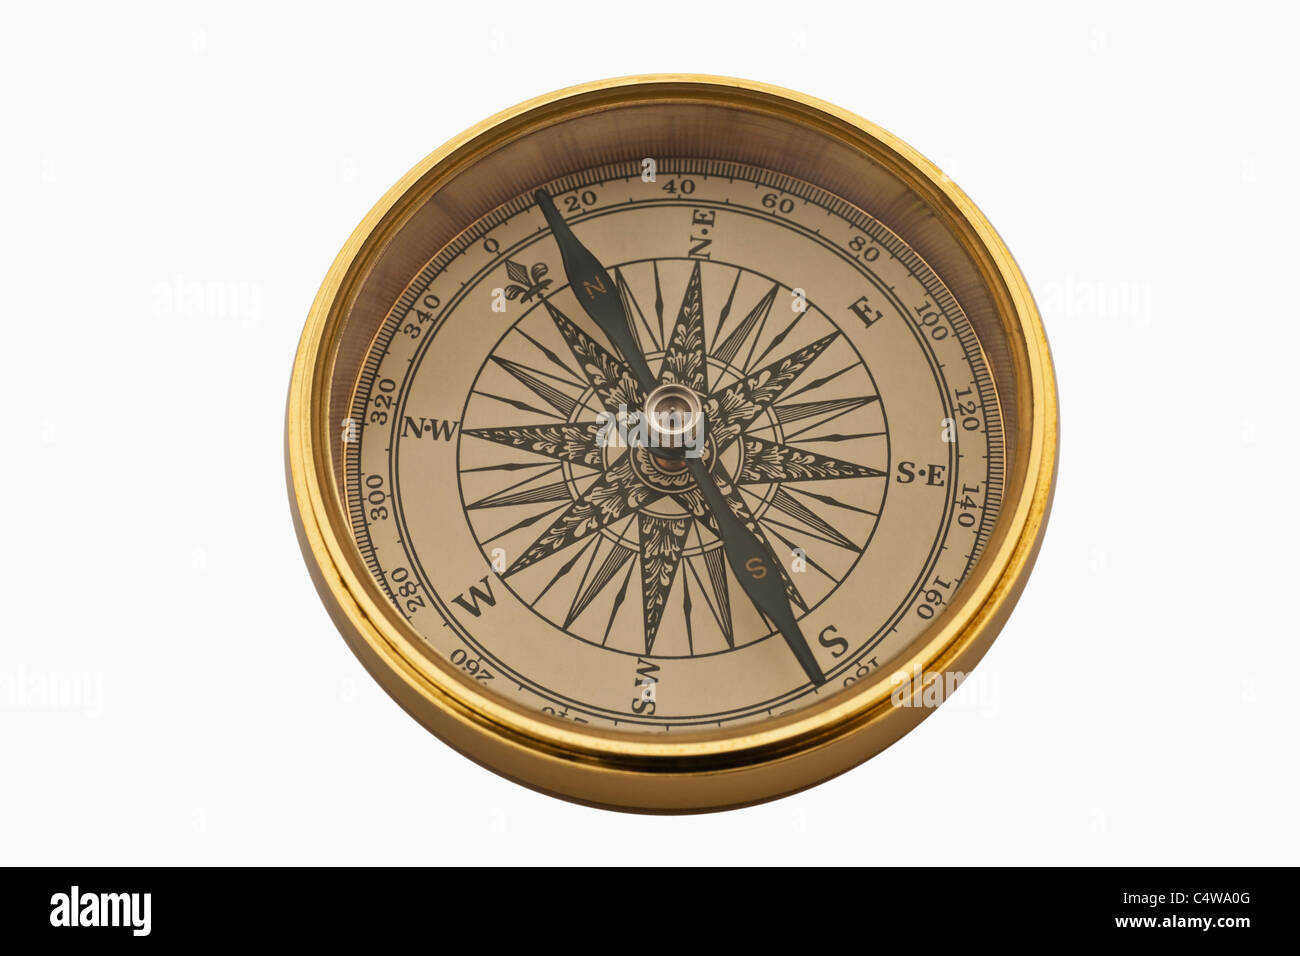 Detailansicht eines Kompasses | Dettaglio foto di una bussola Foto Stock